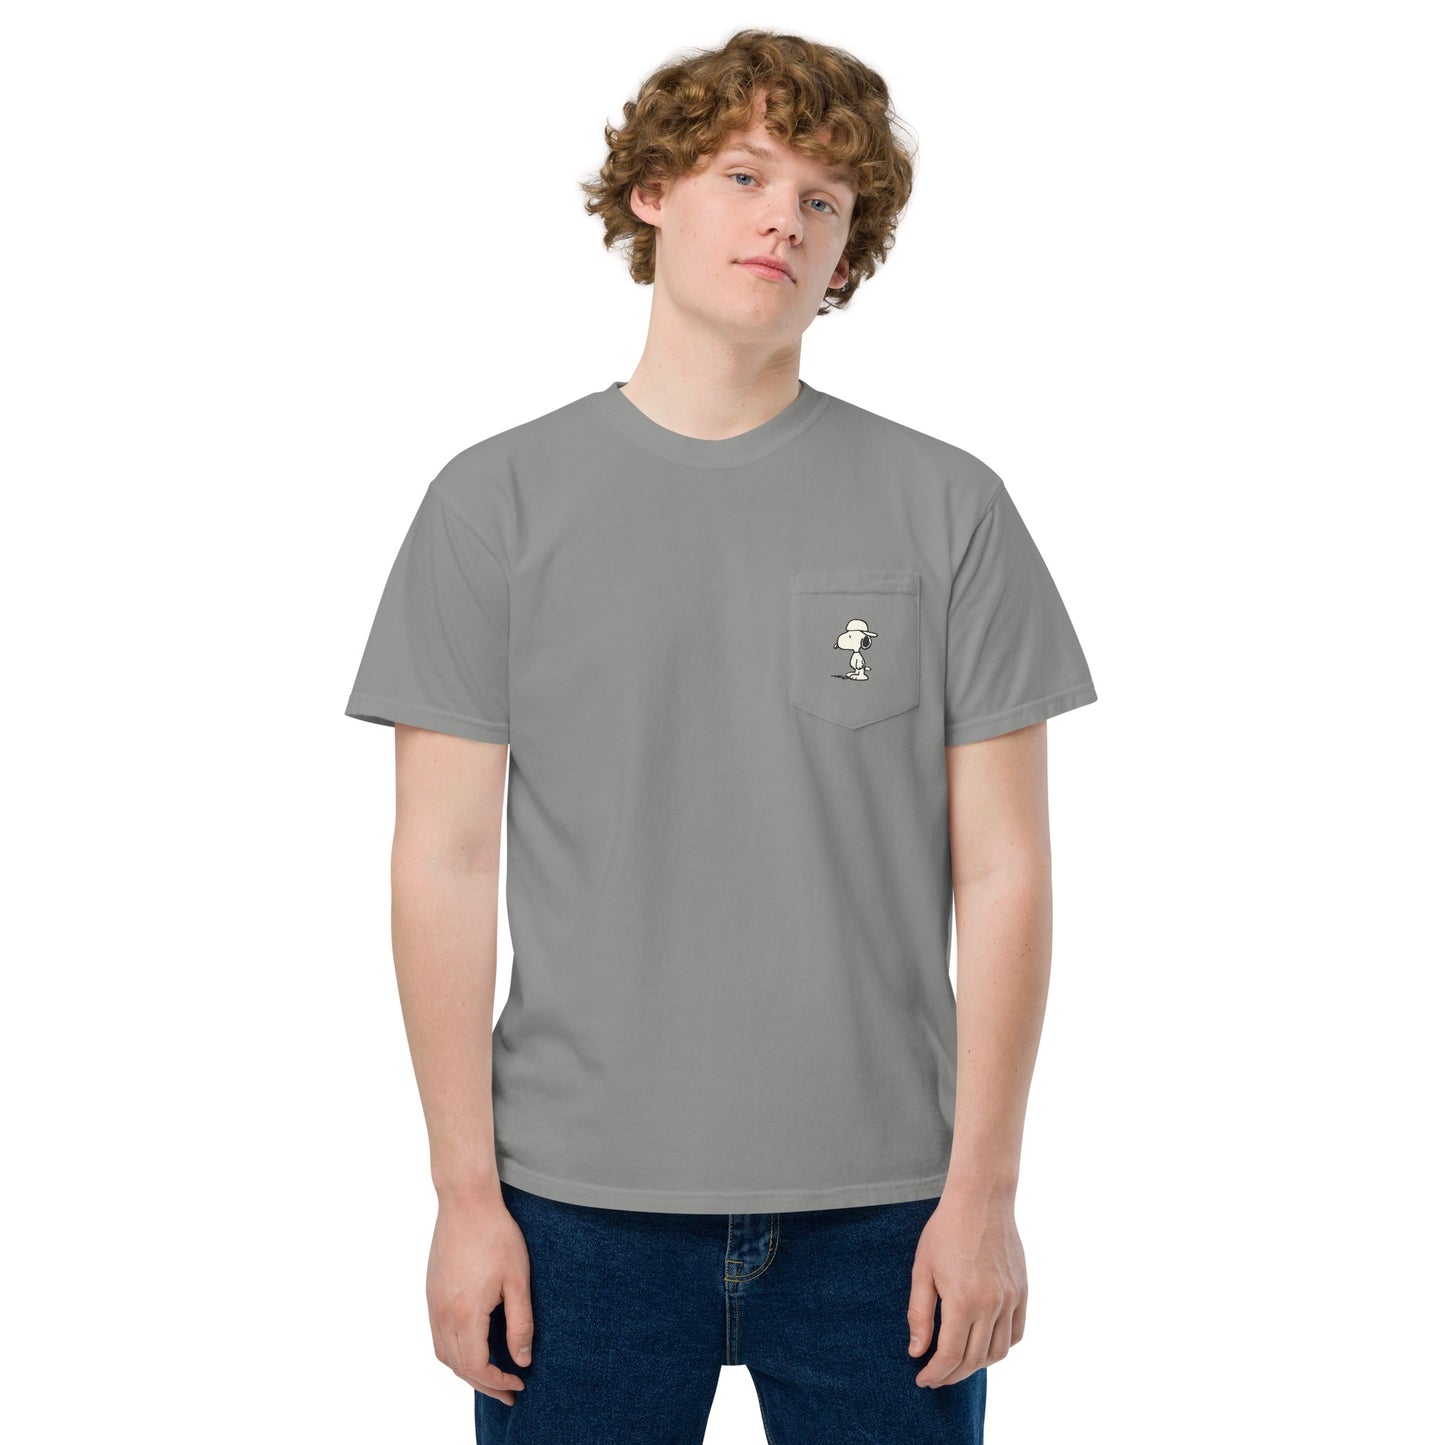 Peanuts Records Comfort Colors Pocket T-Shirt